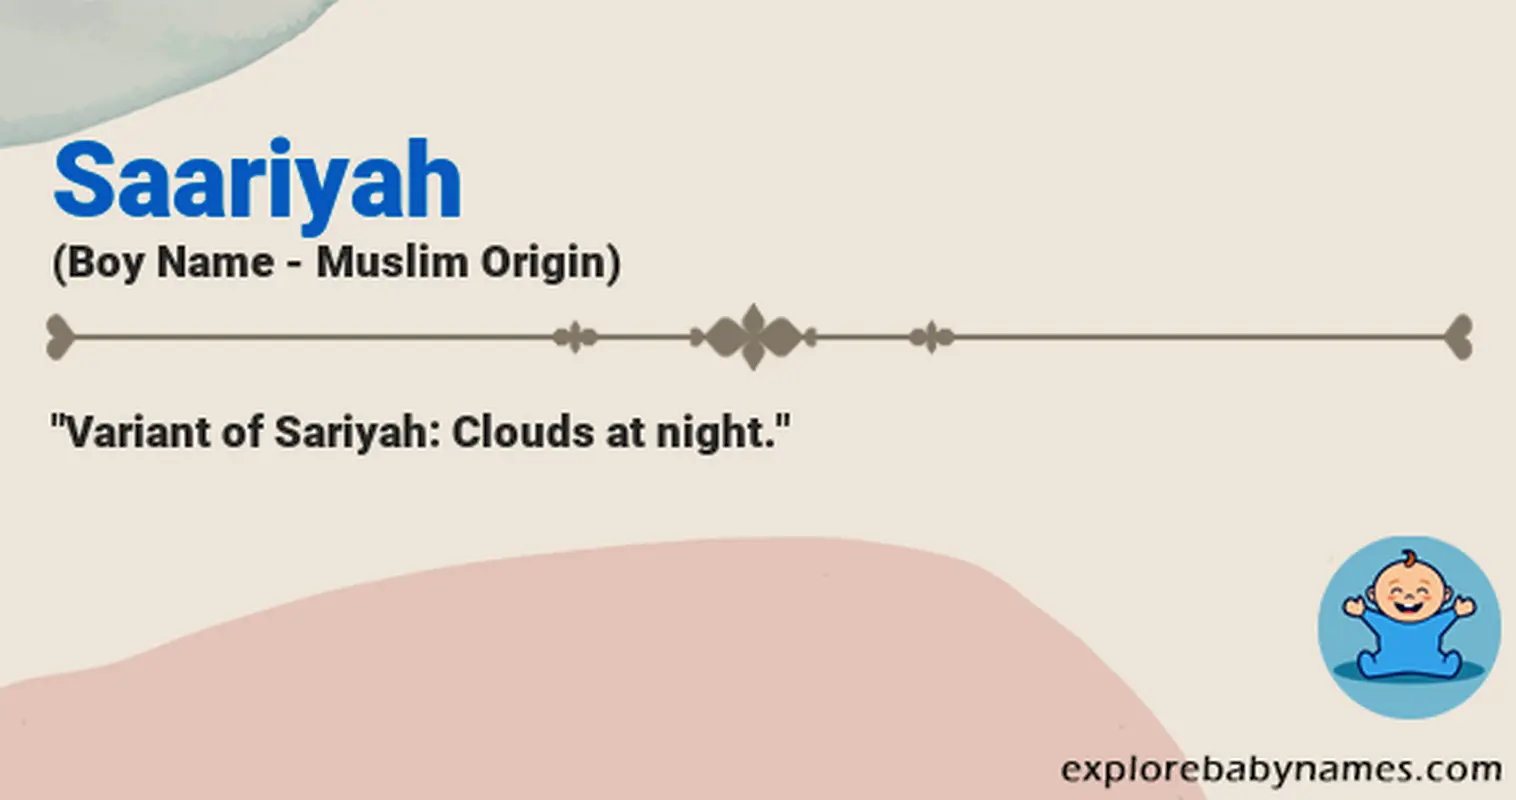 Meaning of Saariyah